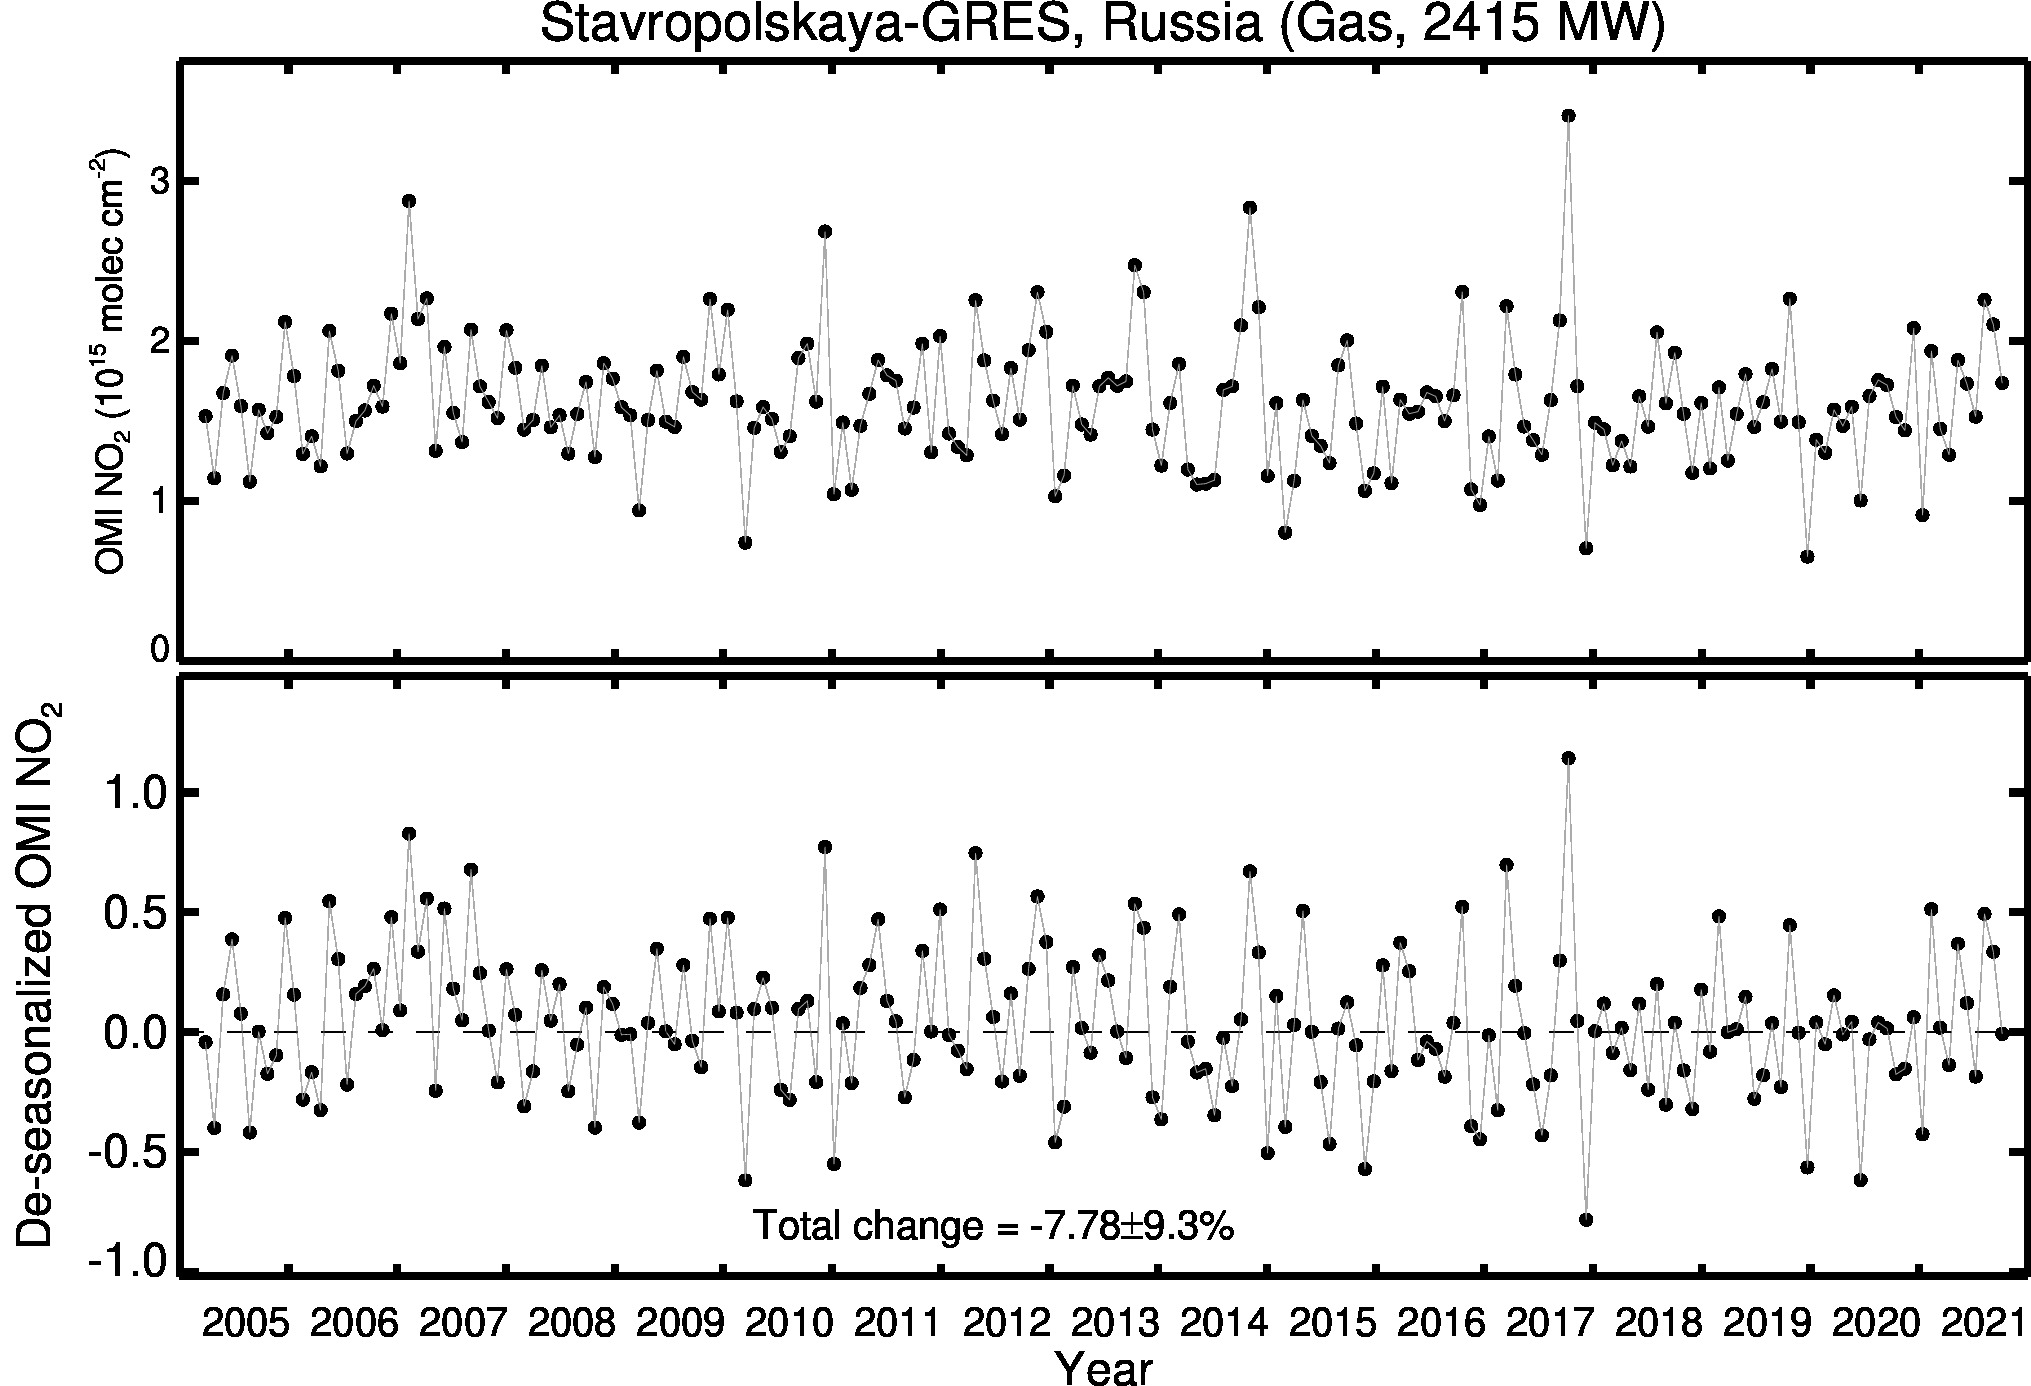 Stavropolskaya GRES Line Plot 2005-2021